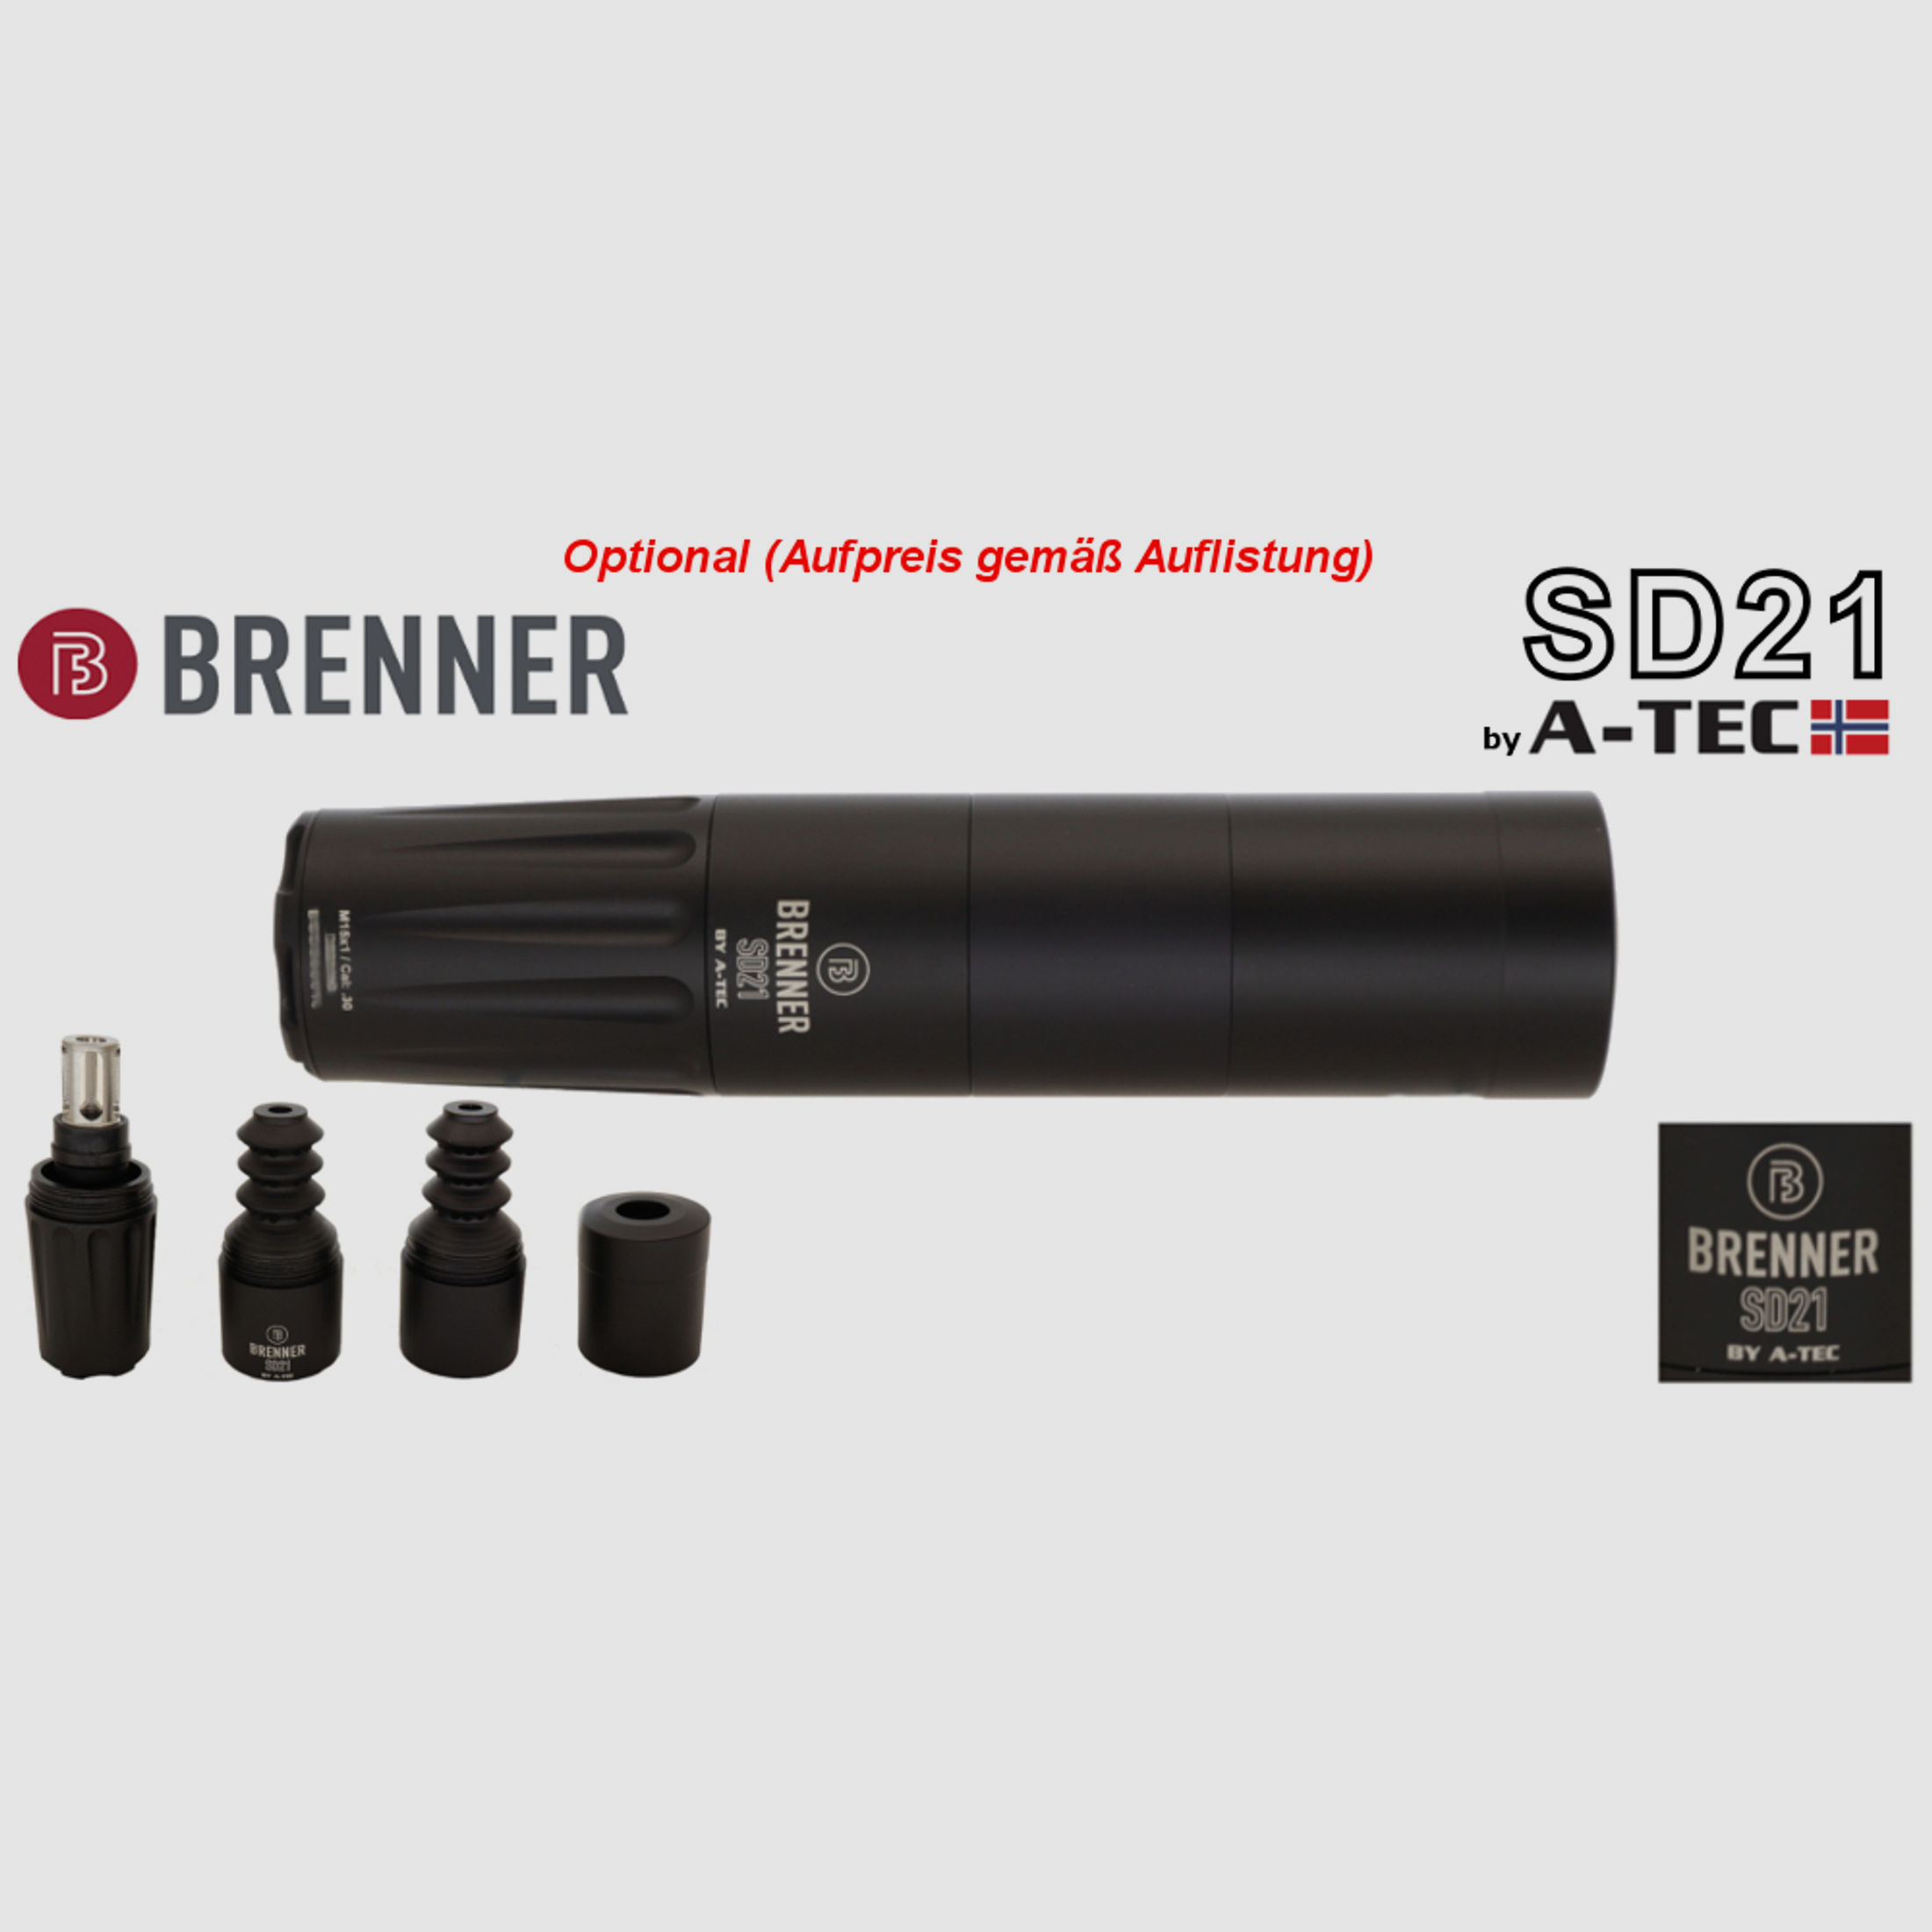 Brenner Komplett-Set: BR20 L.E. Nussbaum- Schaft verstellbarer Schaftrücken mit Steiner Ranger 3-12x56 (Best.Nr.: BR20LEP9) Finanzierung möglich